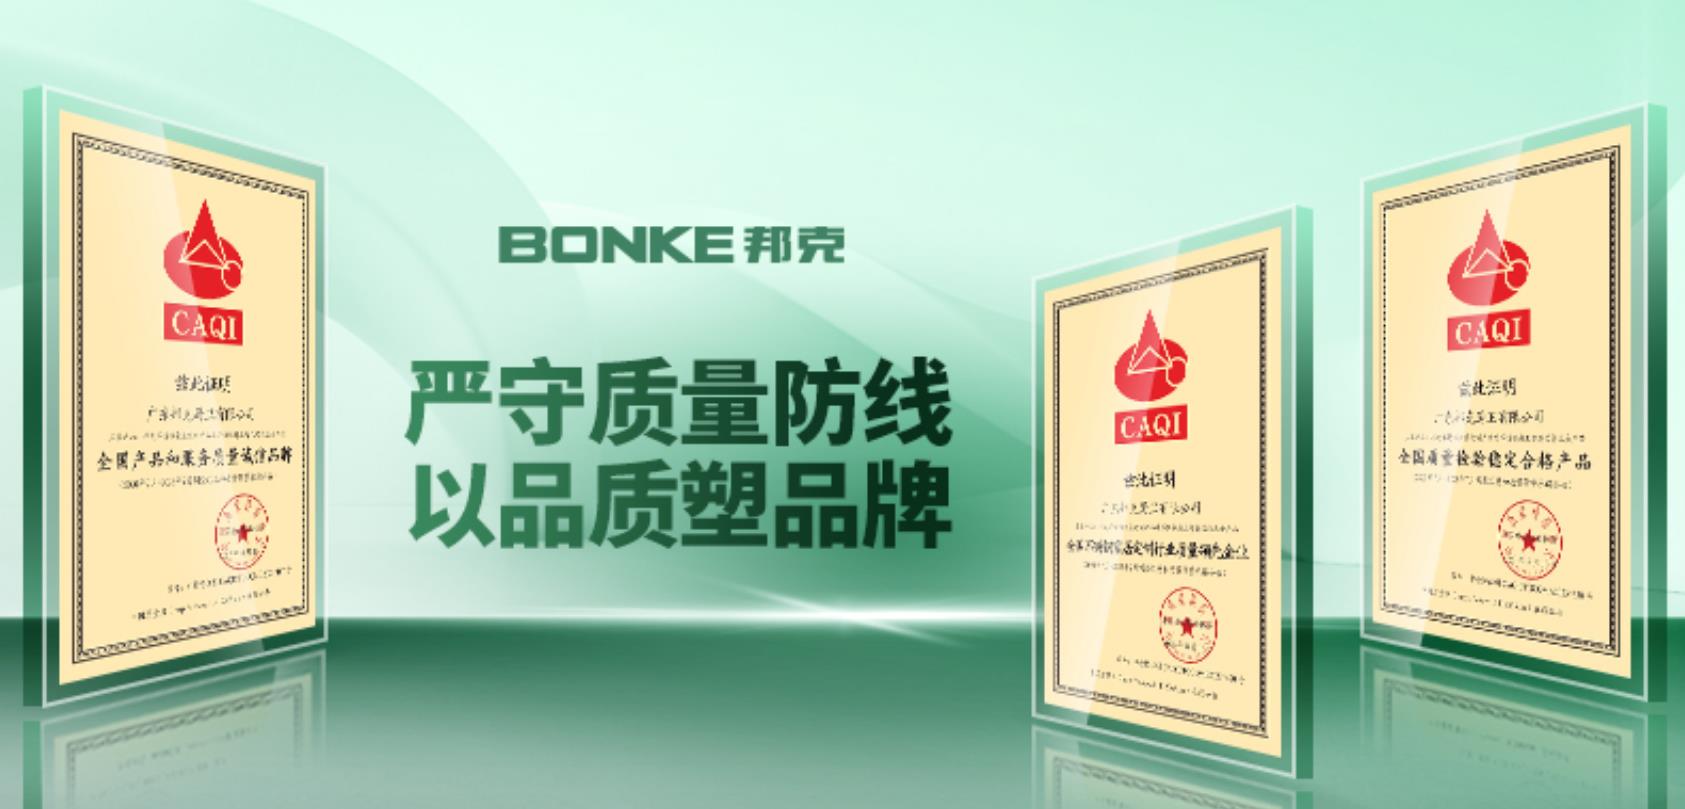 实“质”名归丨邦克获中国质检协会颁发三大荣誉称号！